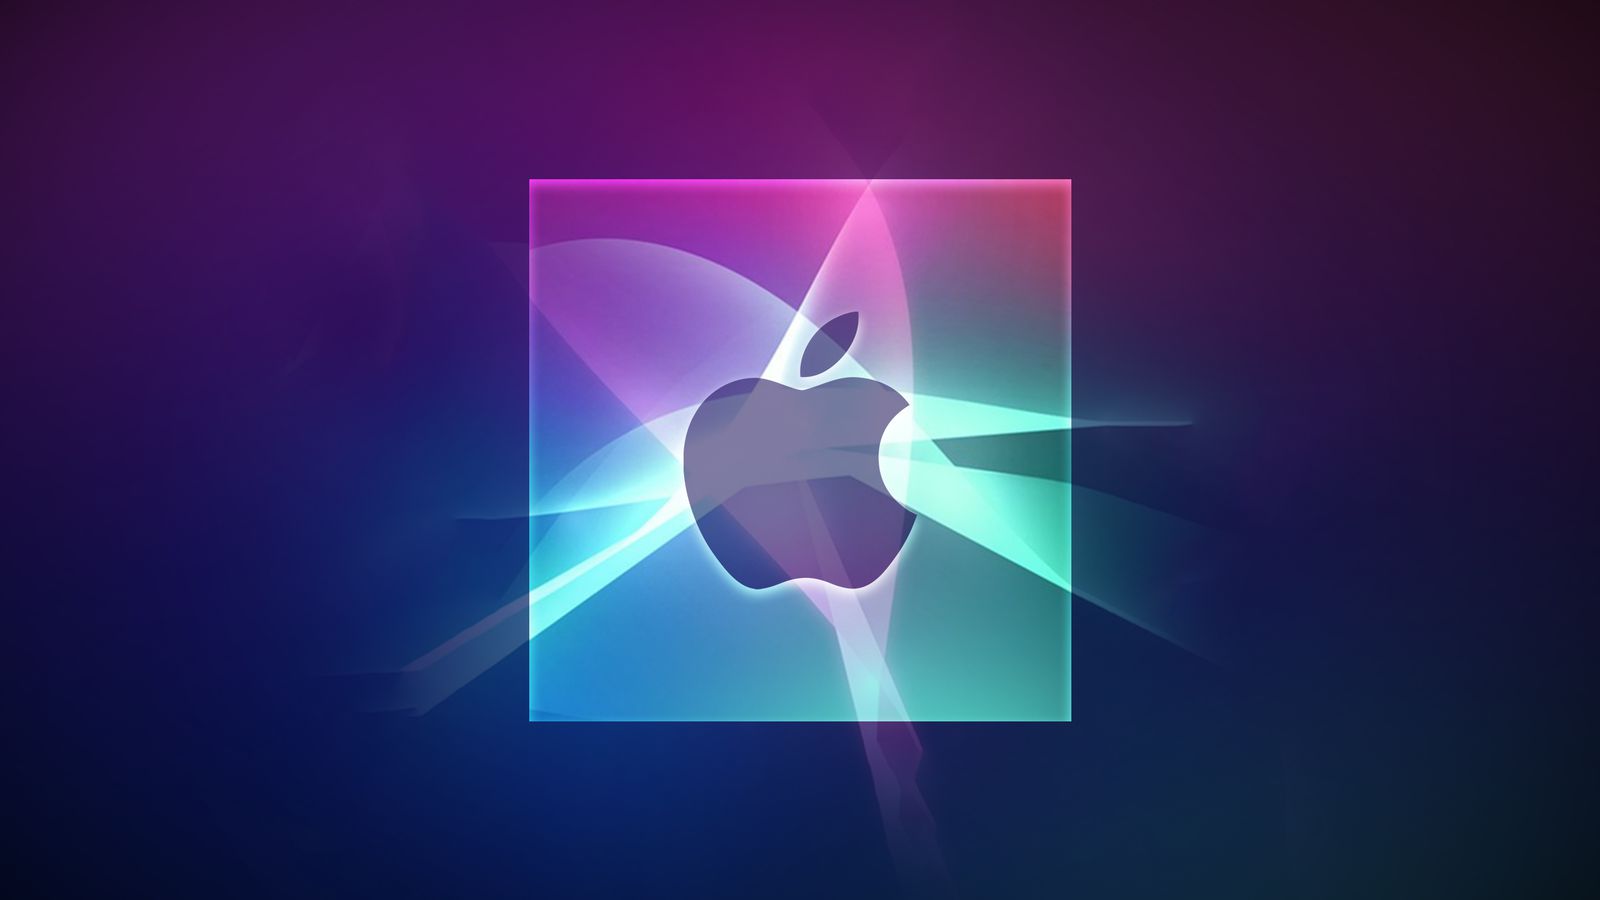 Da iPhoneIslam.com, il logo Apple su uno sfondo sfumato di toni viola e blu, arricchito da effetti di luce e ombra, evidenziato nelle Fringe News di questa settimana